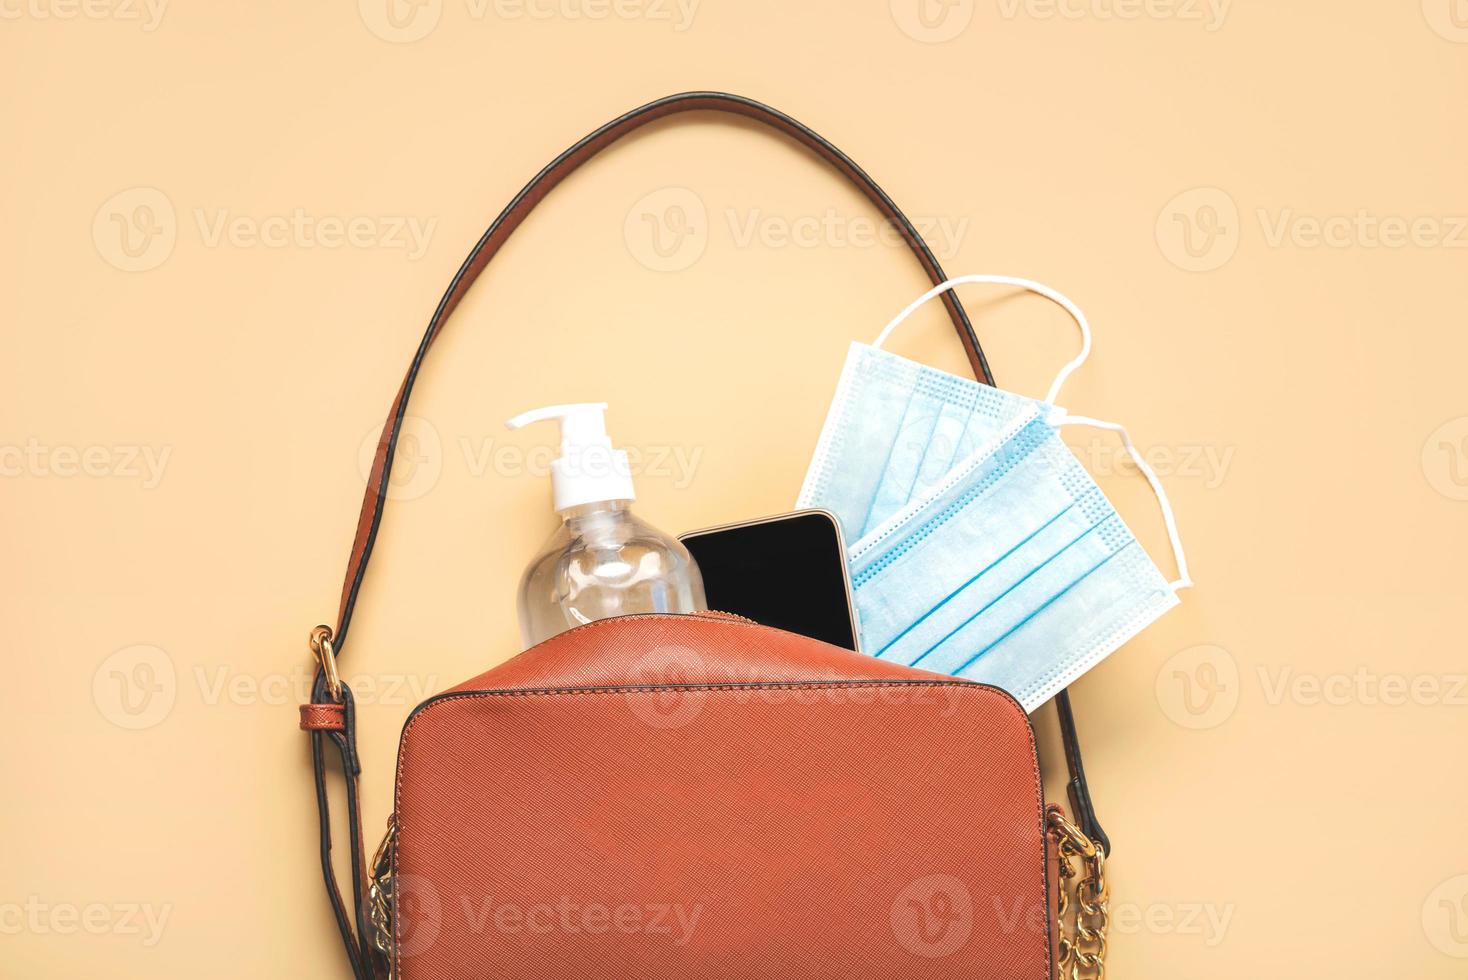 damestas met beschermend chirurgisch masker, fles met ontsmettingsmiddel en smartphone.covid 19 concept foto